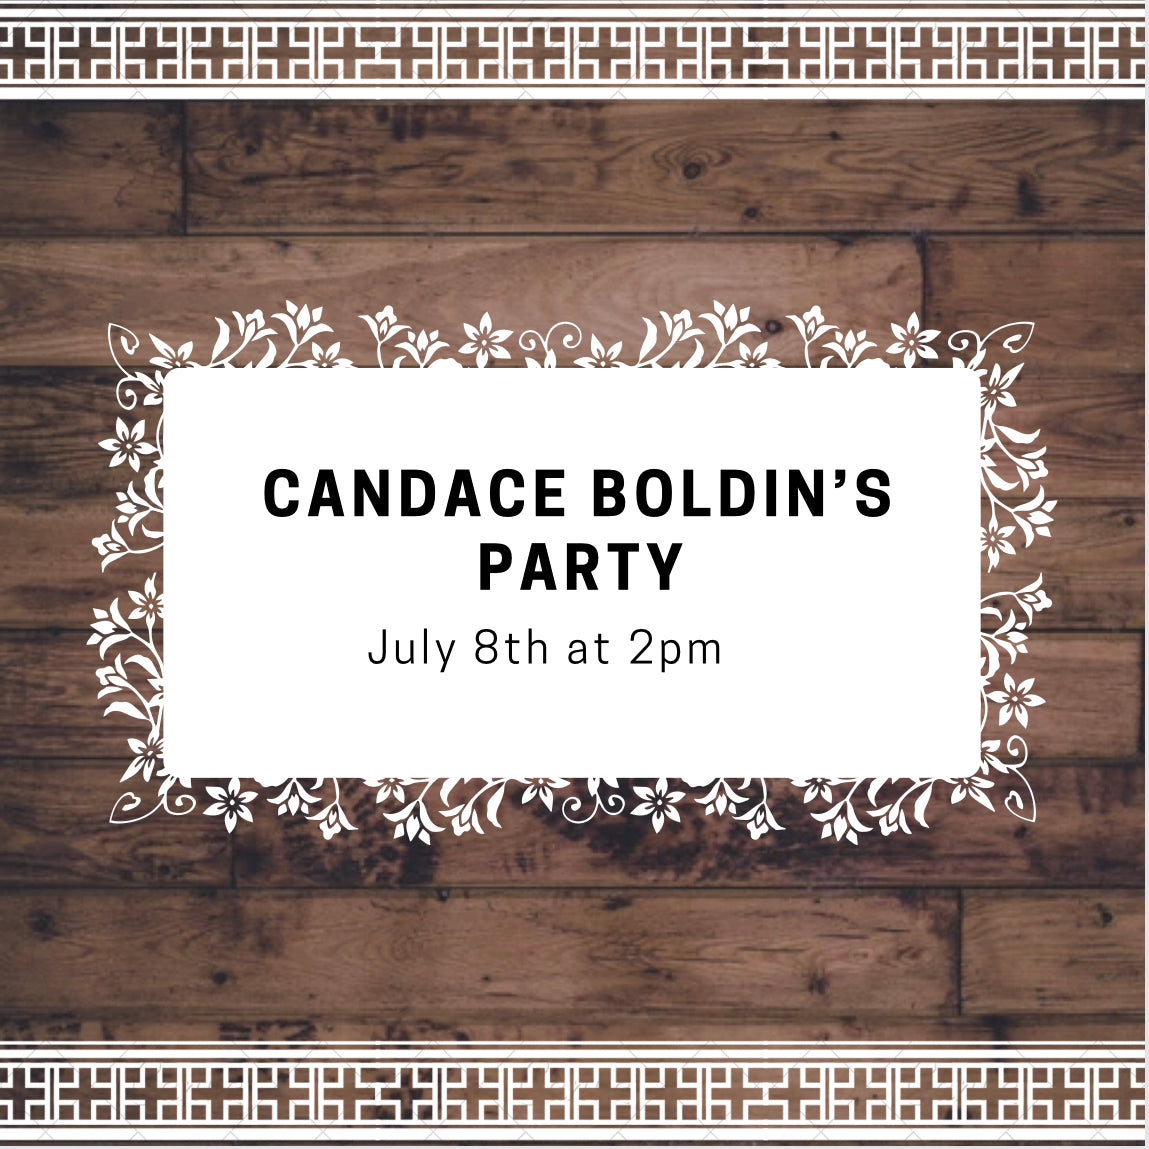 CANDACE BOLDIN'S PARTY